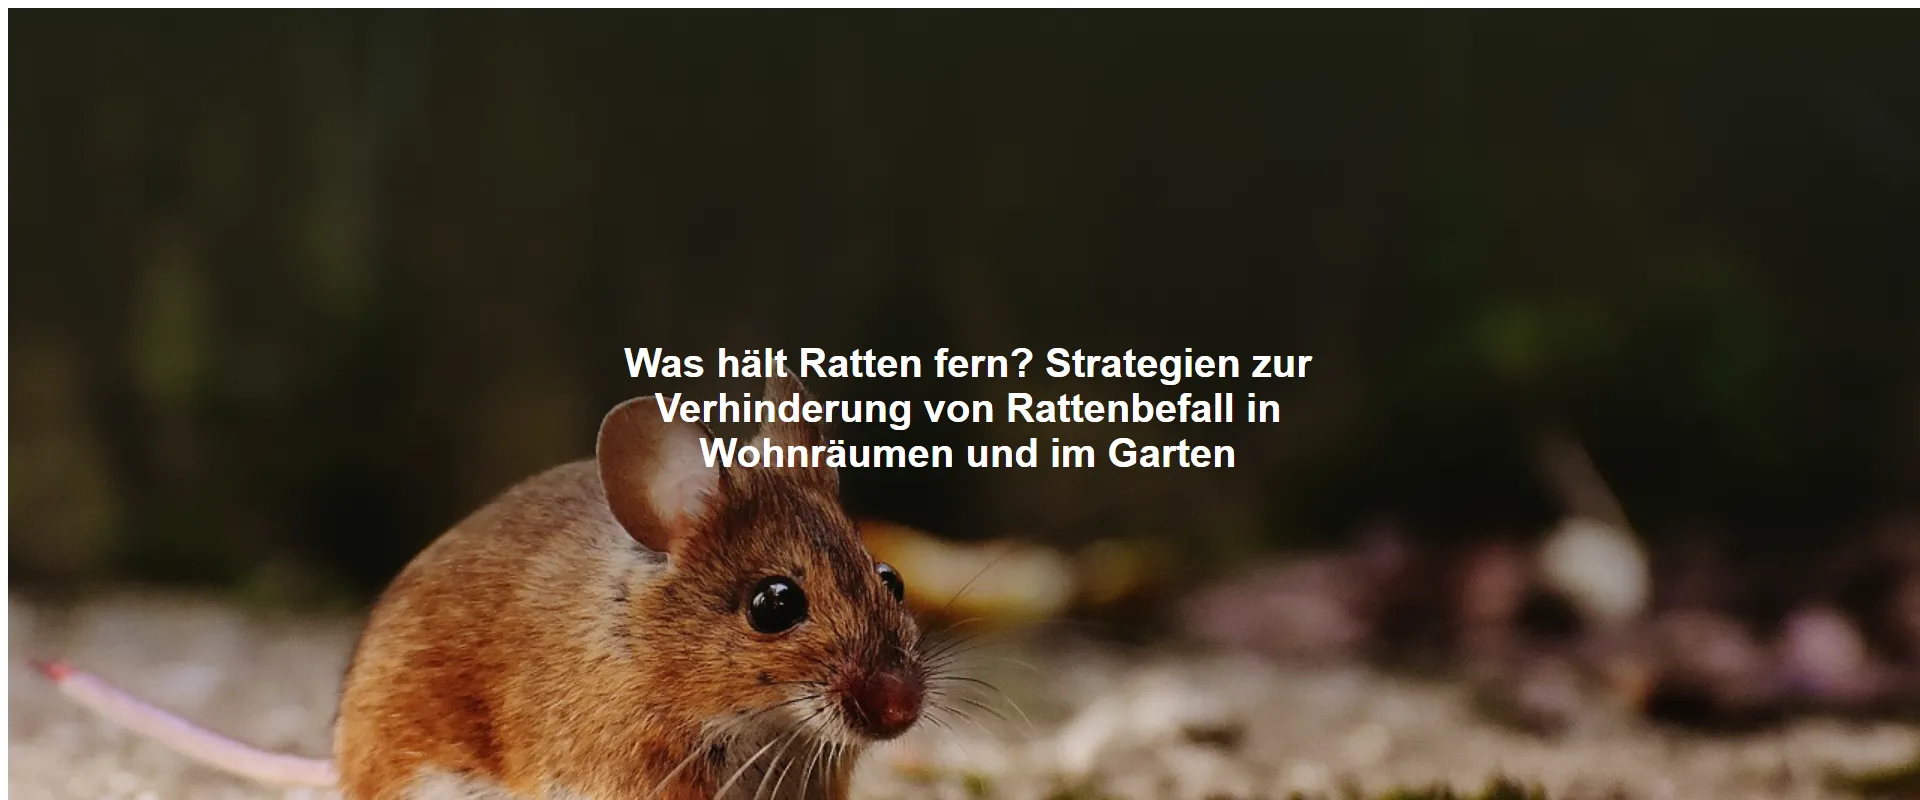 Was hält Ratten fern? Strategien zur Verhinderung von Rattenbefall in Wohnräumen und im Garten